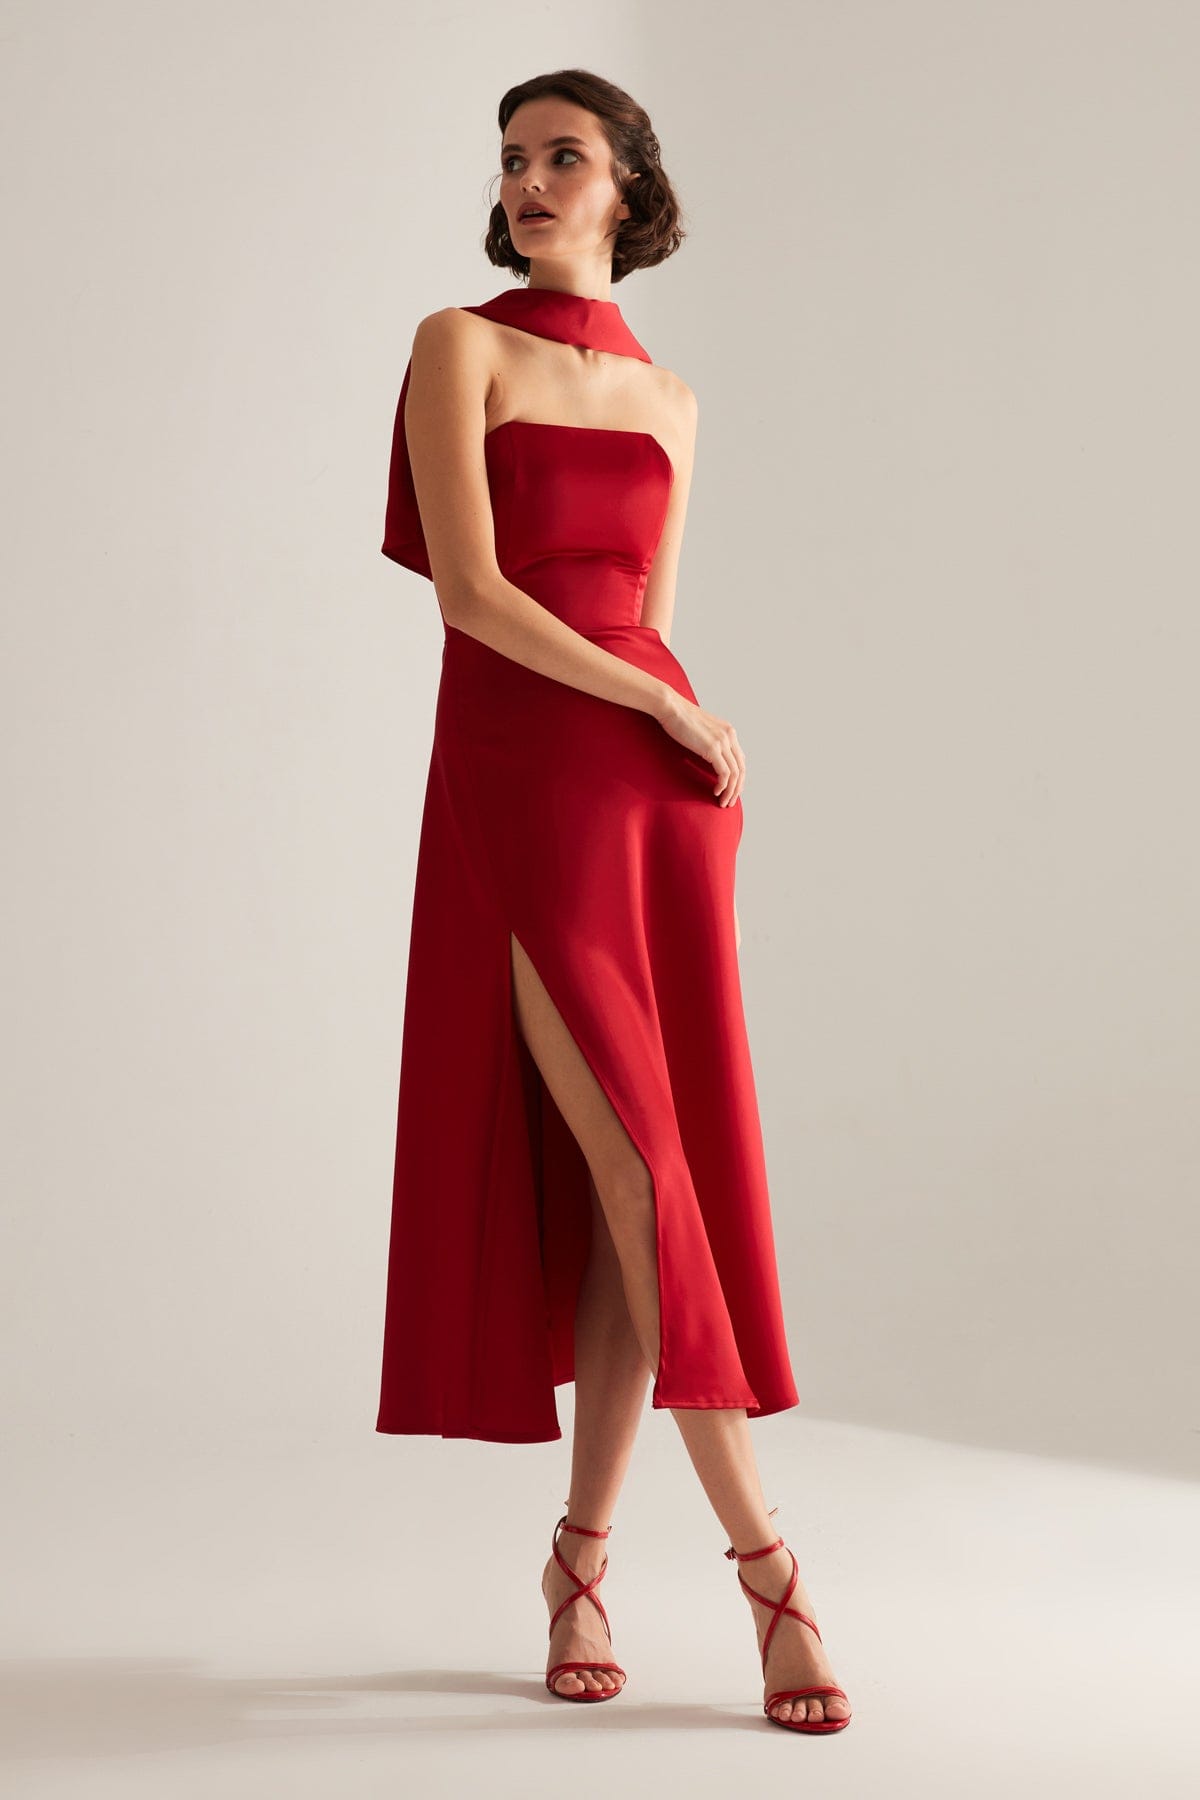 BRERA Kırmızı Saten Yırtmaçlı Şallı Straplez Elbise